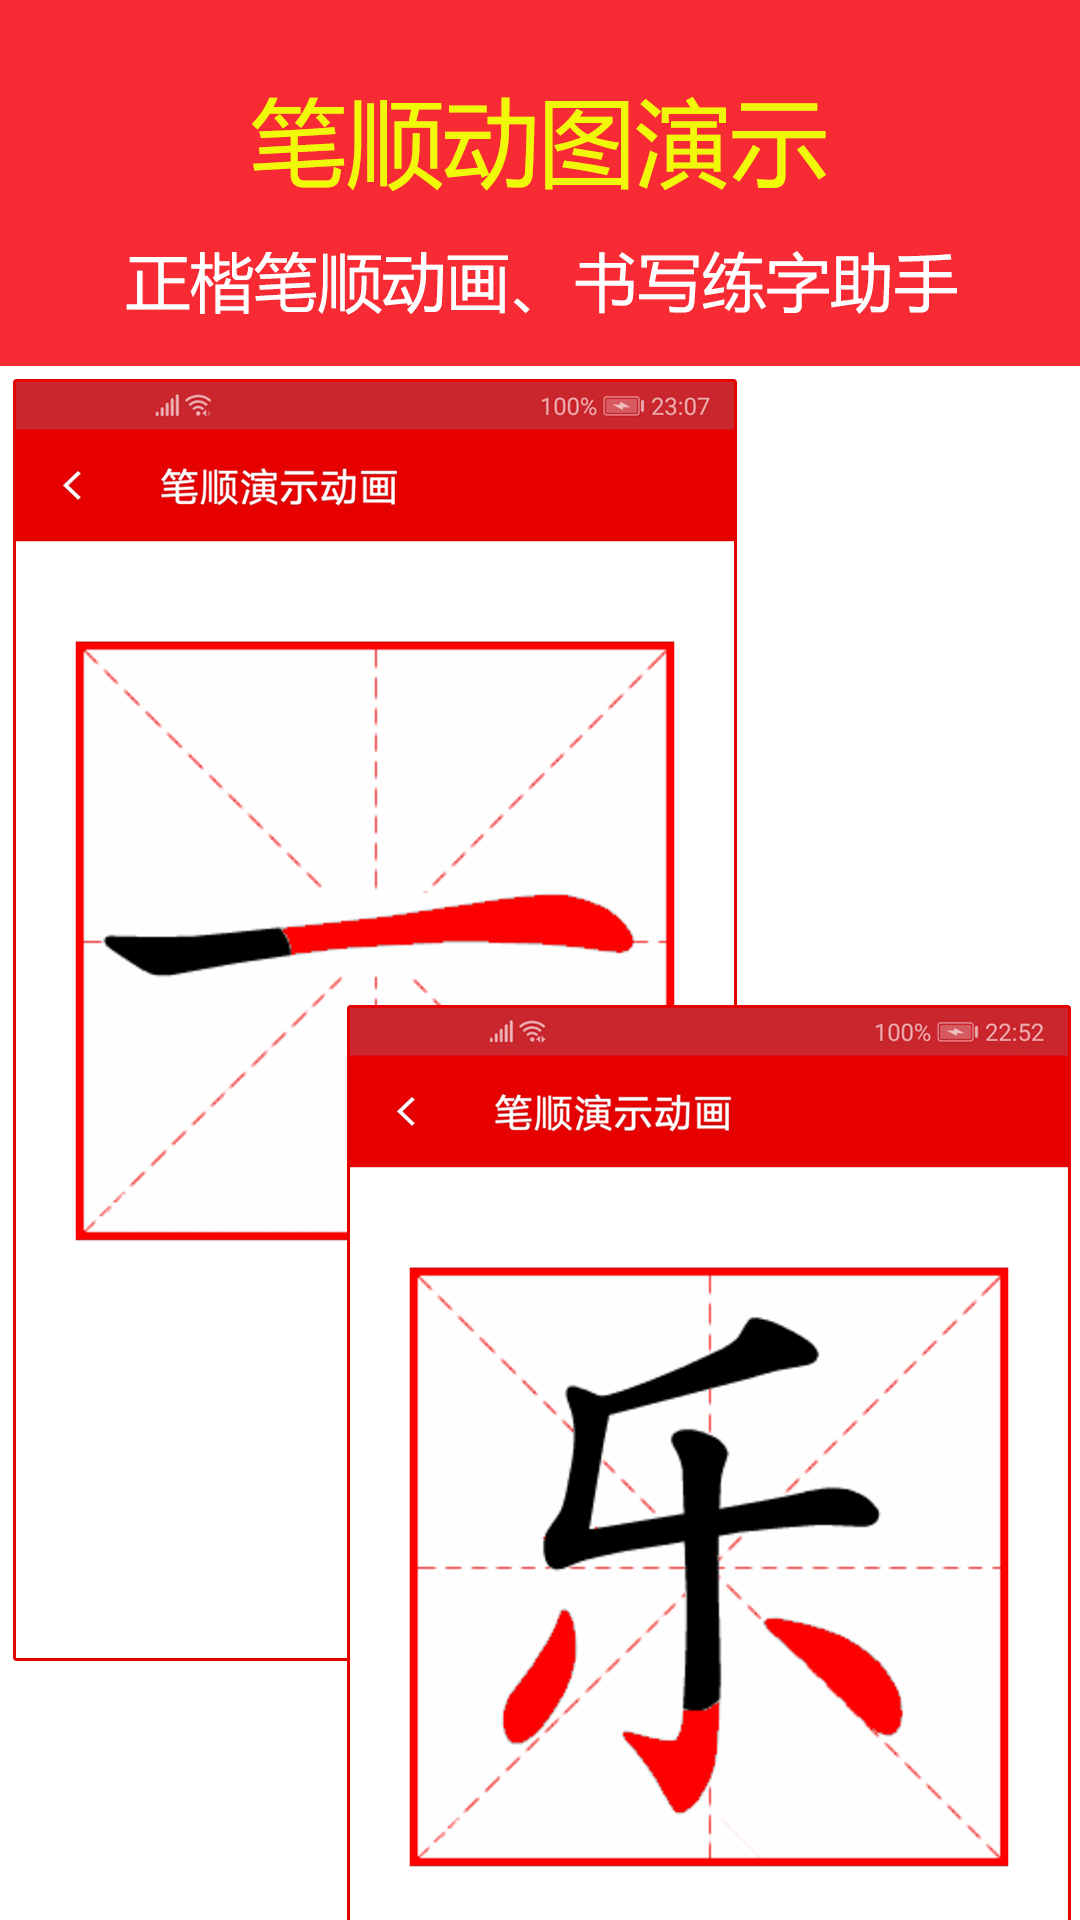 现代汉语字典